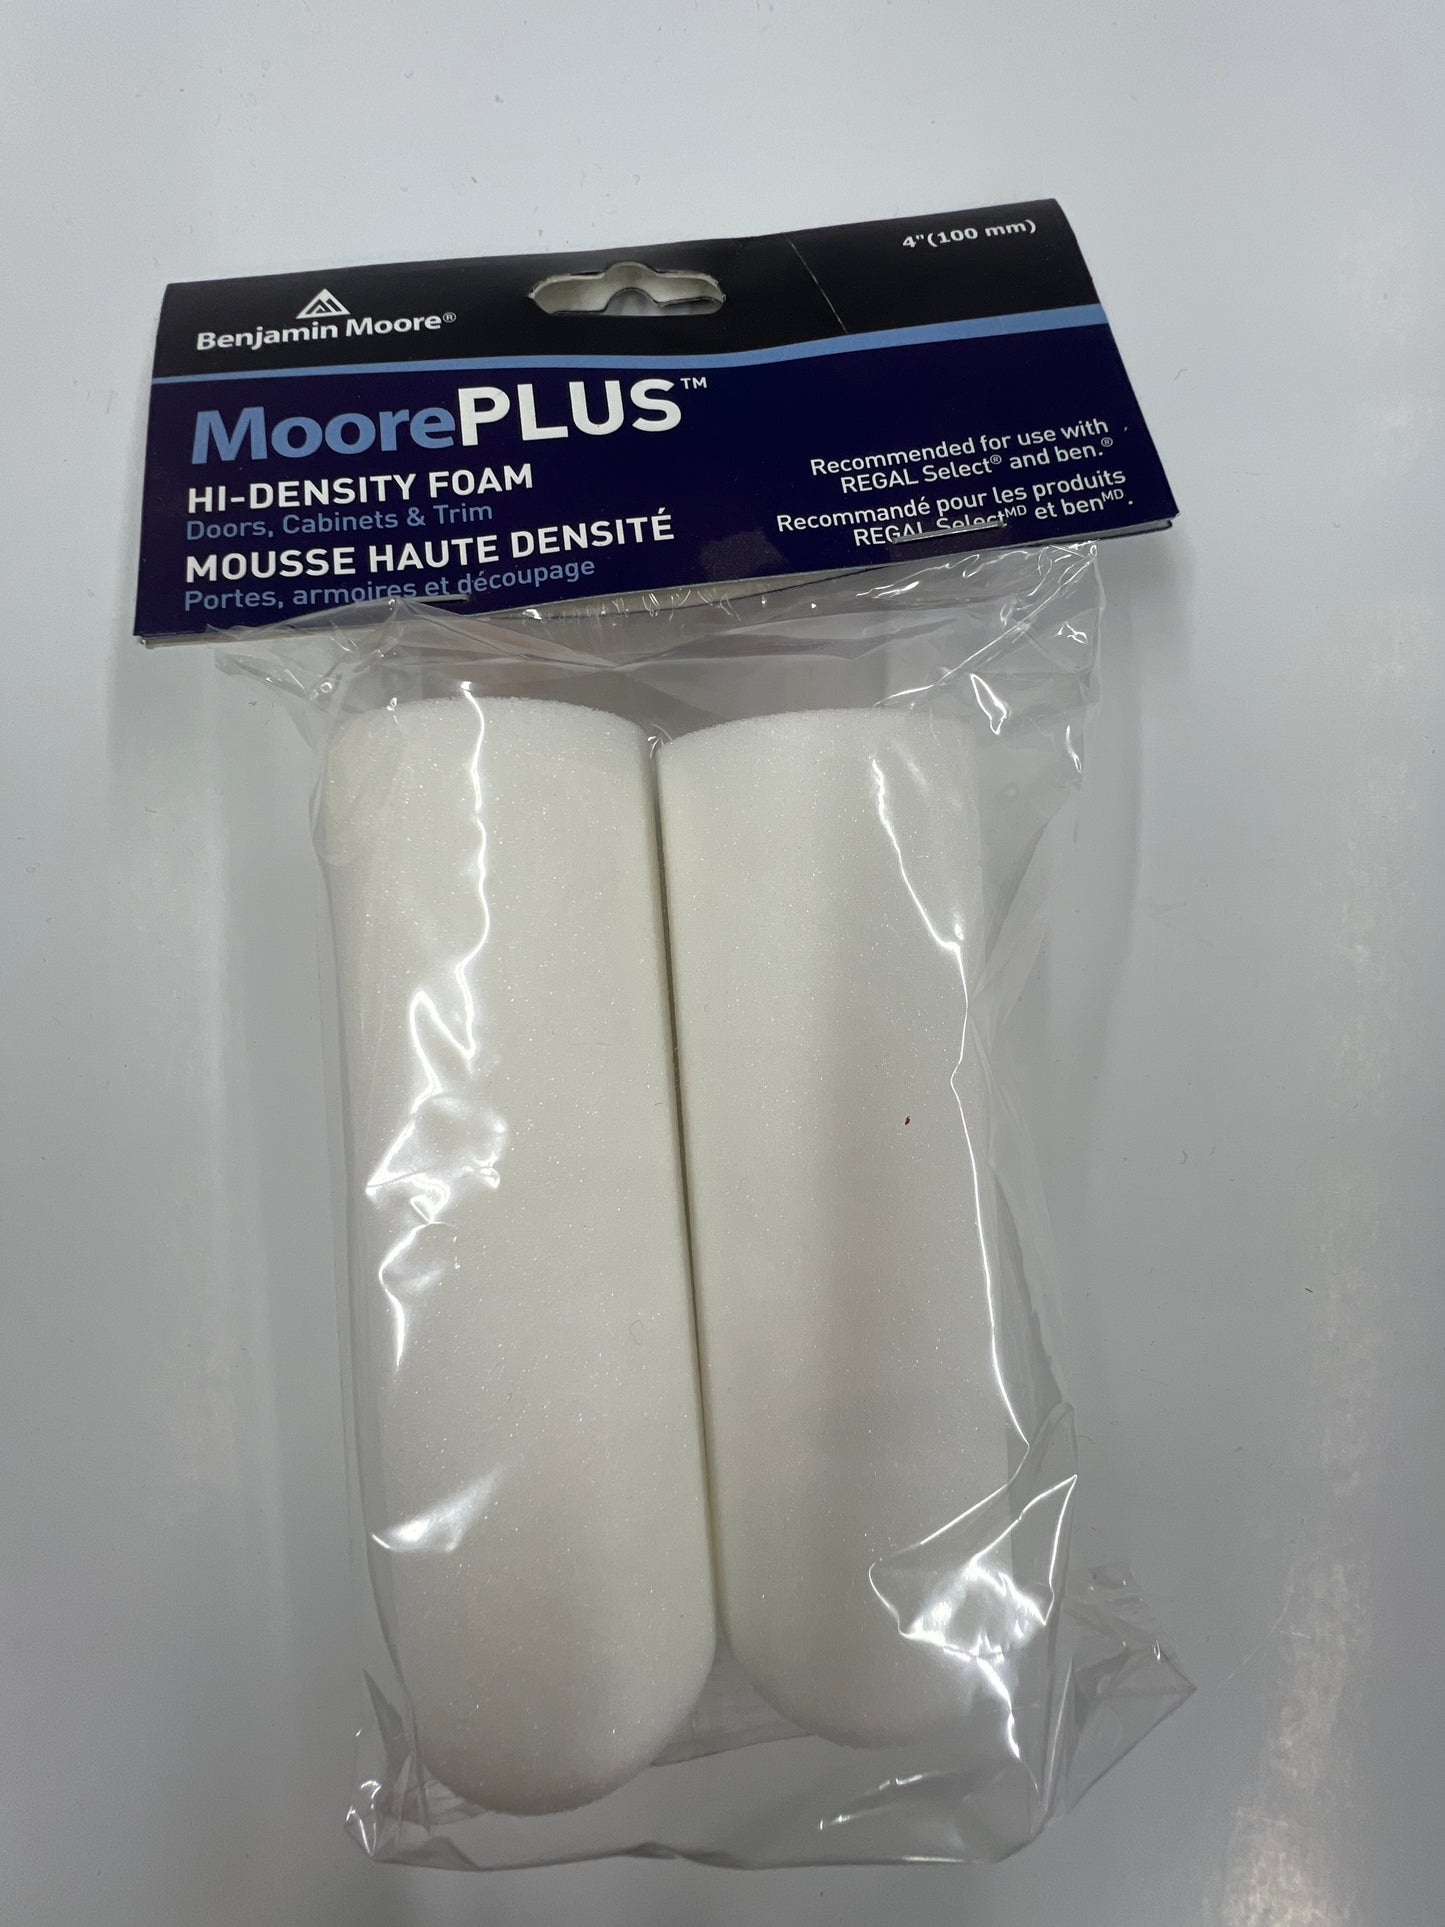 MoorePLUS Hi-Density Foam 4" Rollers 2 Pack